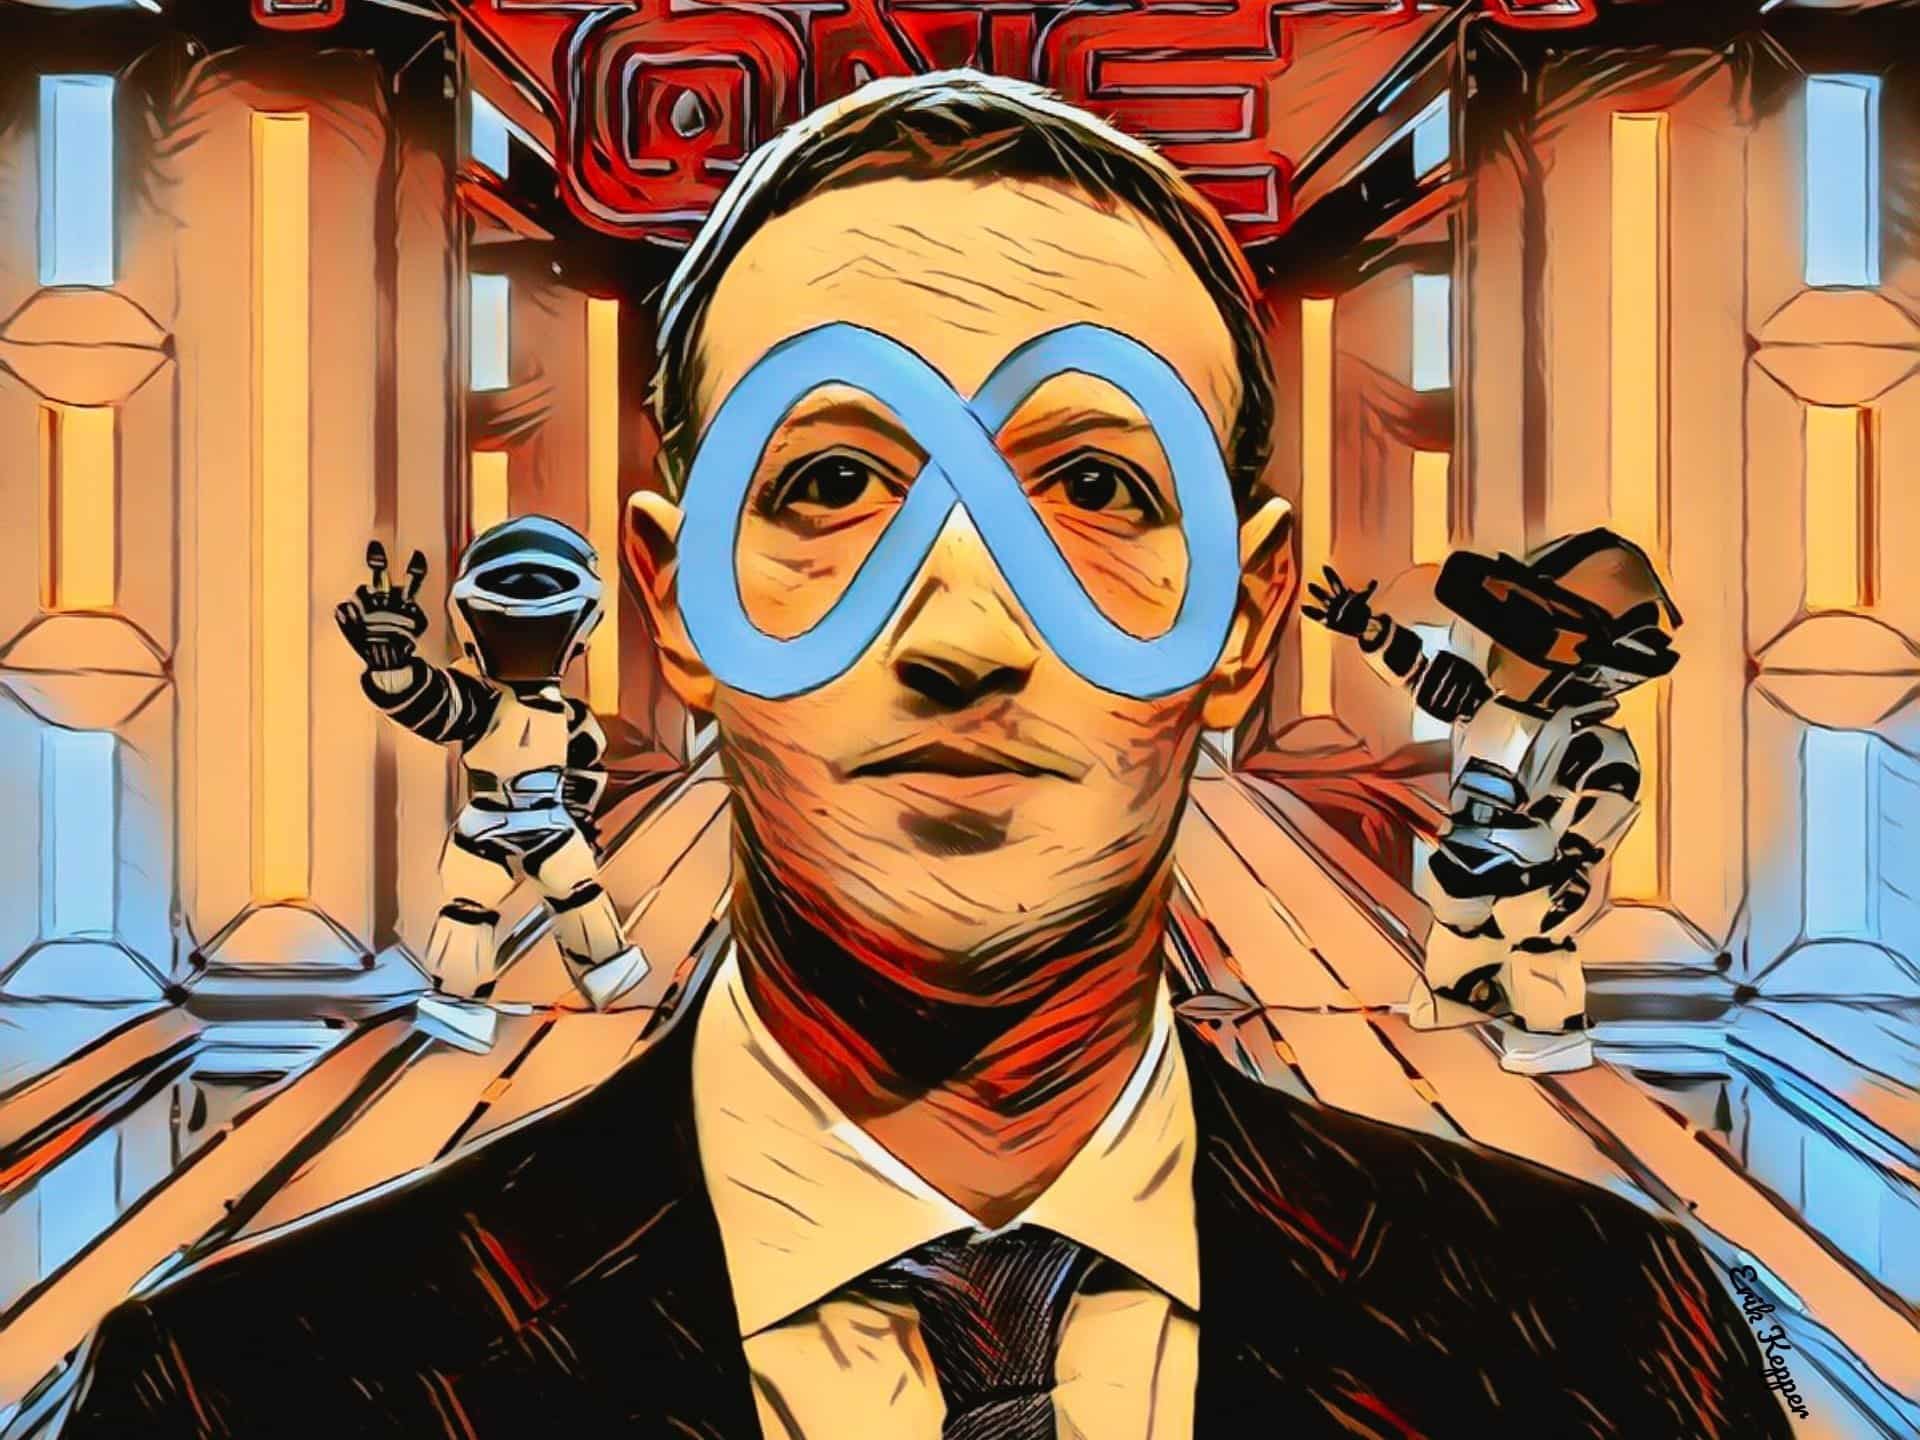 Mark Zuckerberg with Meta logo as a mask on his face